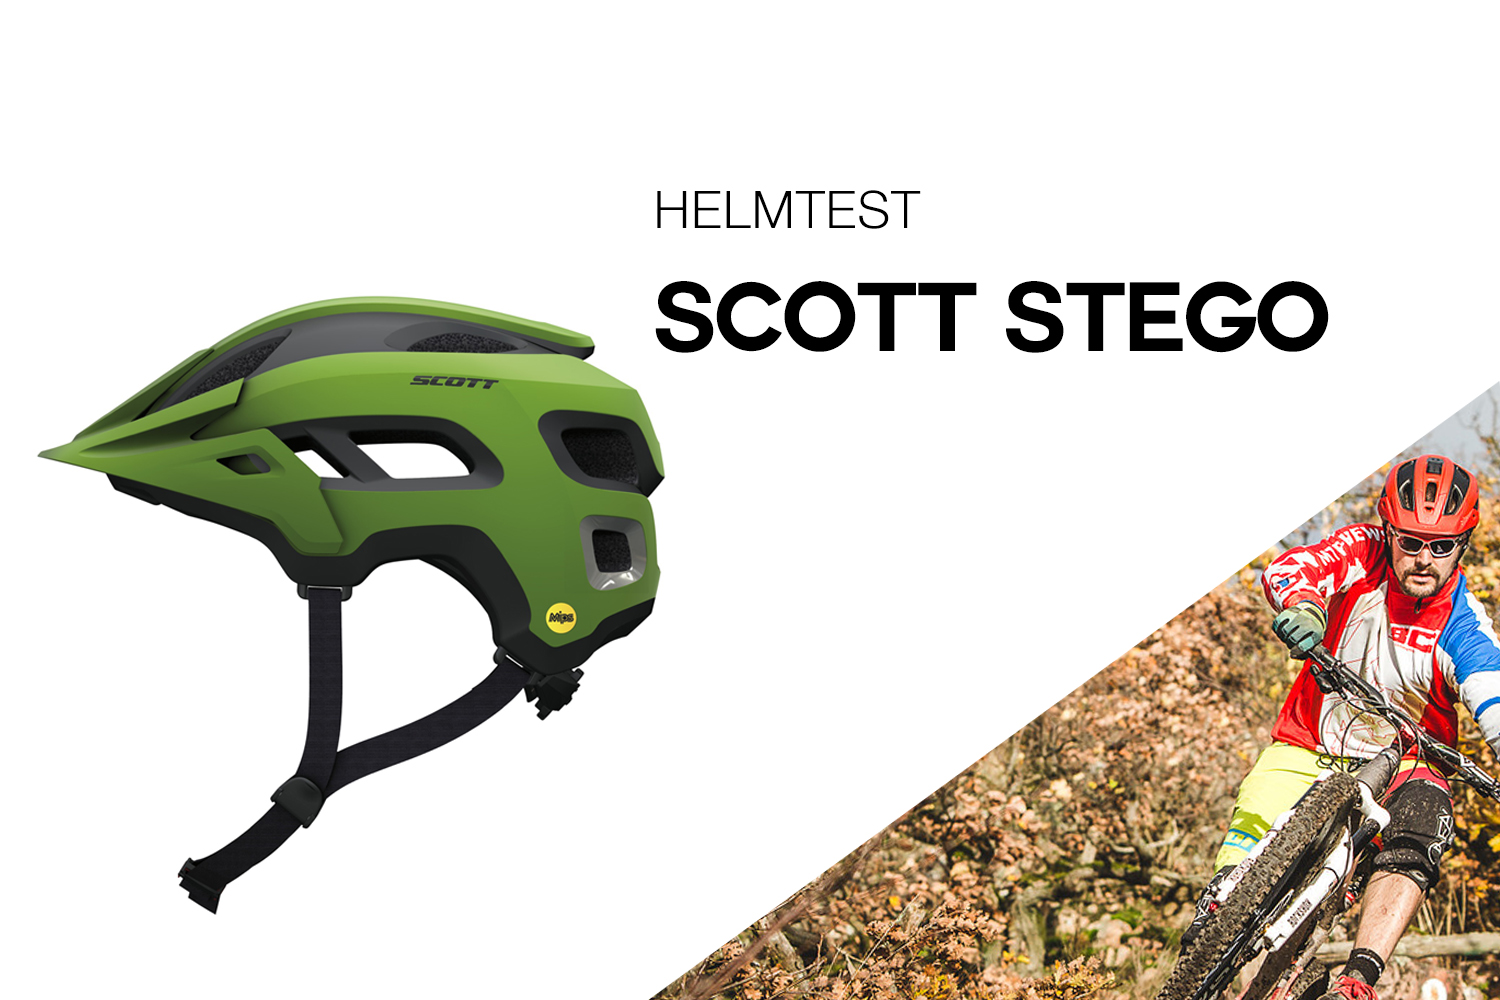 Scott Stego - schweizer Enduro-Helm mit vielen Features